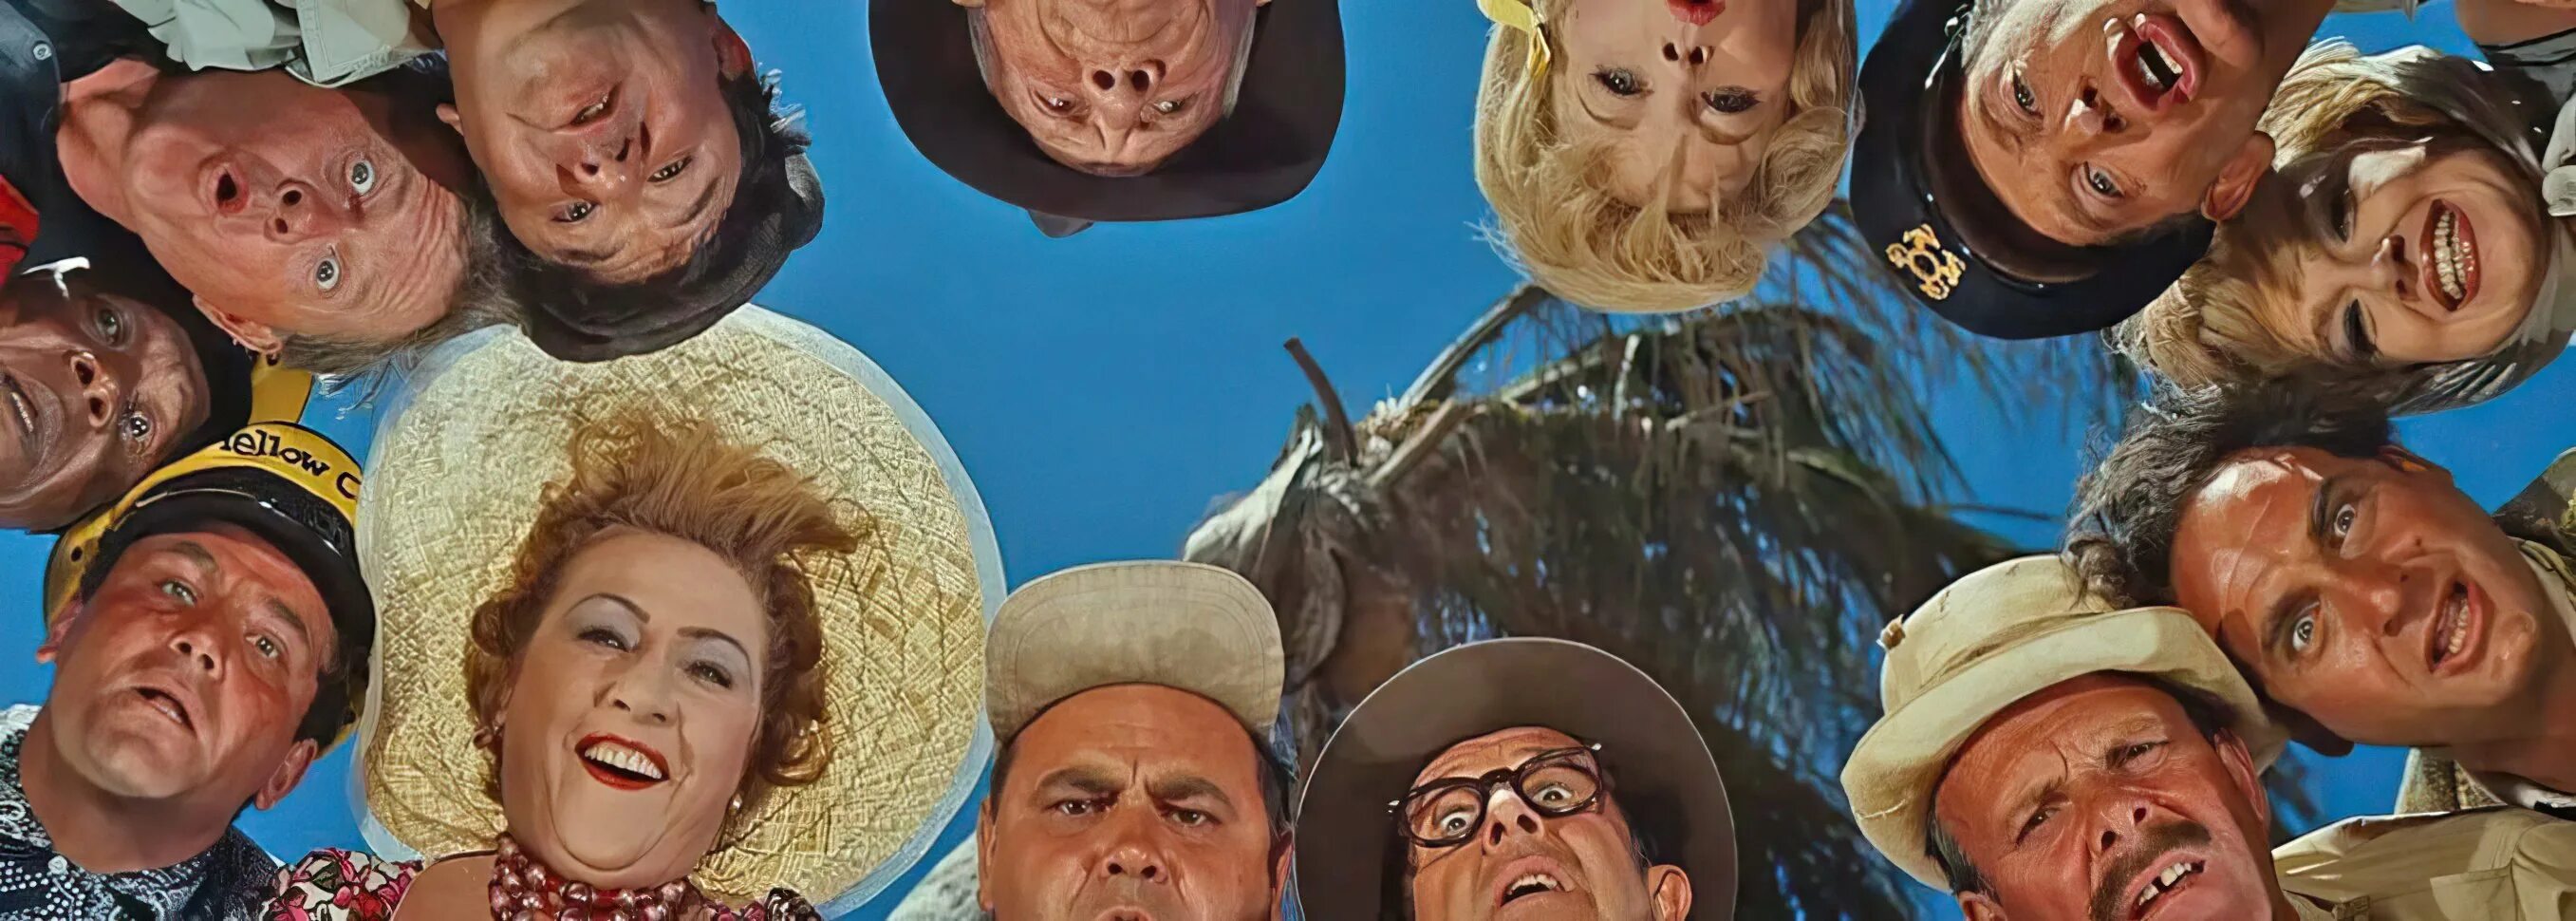 «Этот Безумный, Безумный, Безумный, Безумный мир», Стэнли Крамер, 1963. Этот Безумный Безумный Безумный Безумный мир 1963 танцы. Безумные википедия